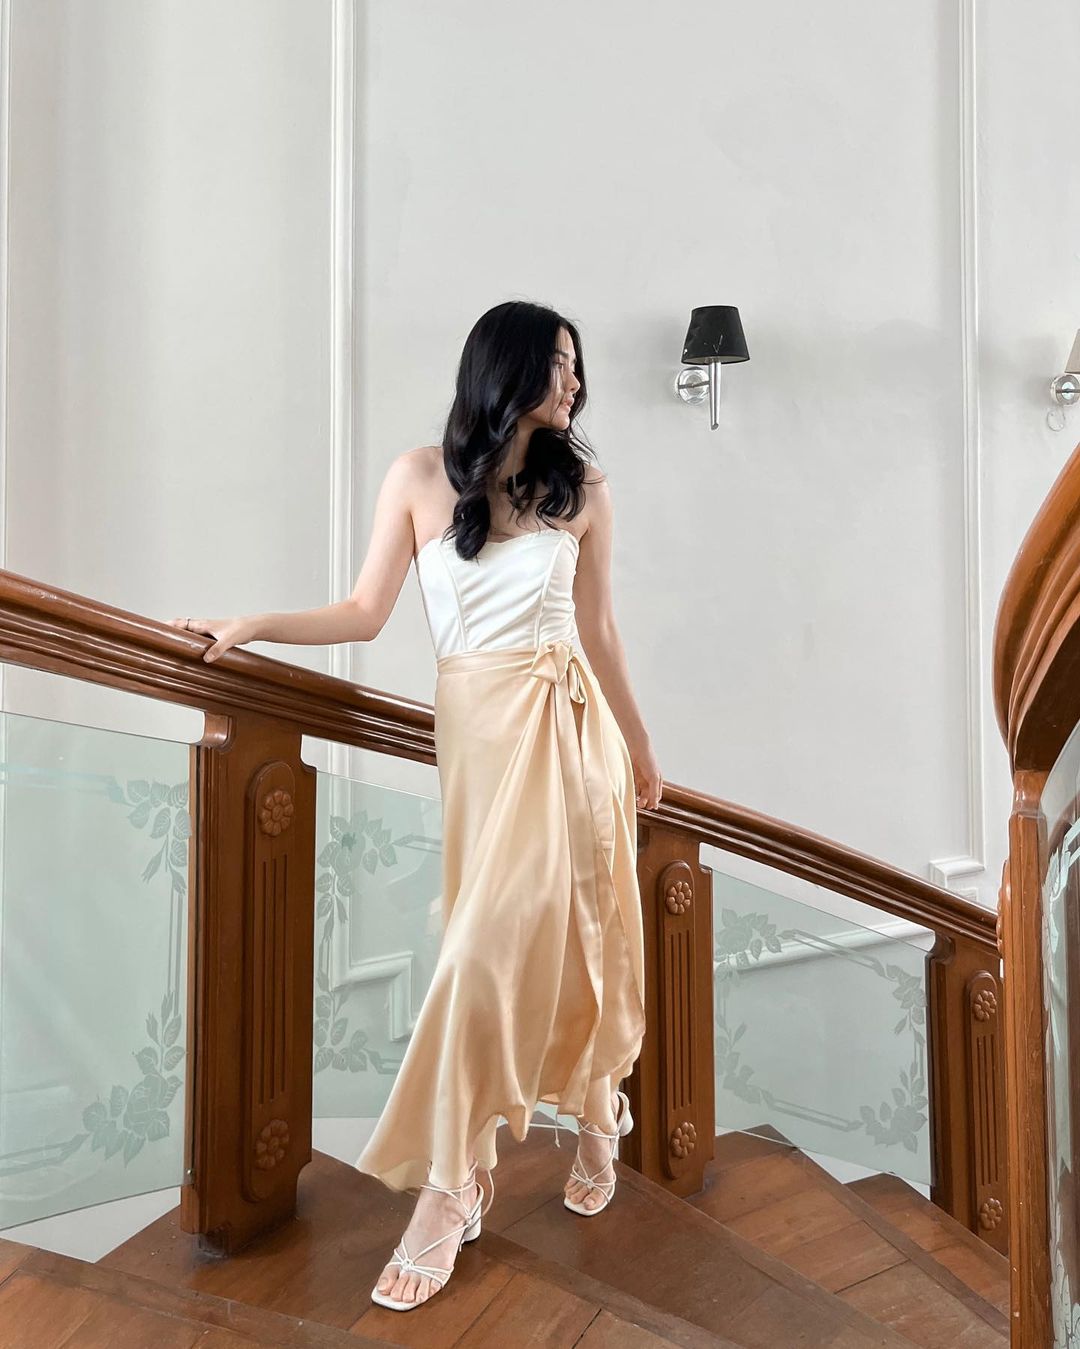 身穿優雅洋裝的女士穿著 the.lookbook.select 的芭蕾舞長裹身裙站在樓梯上。